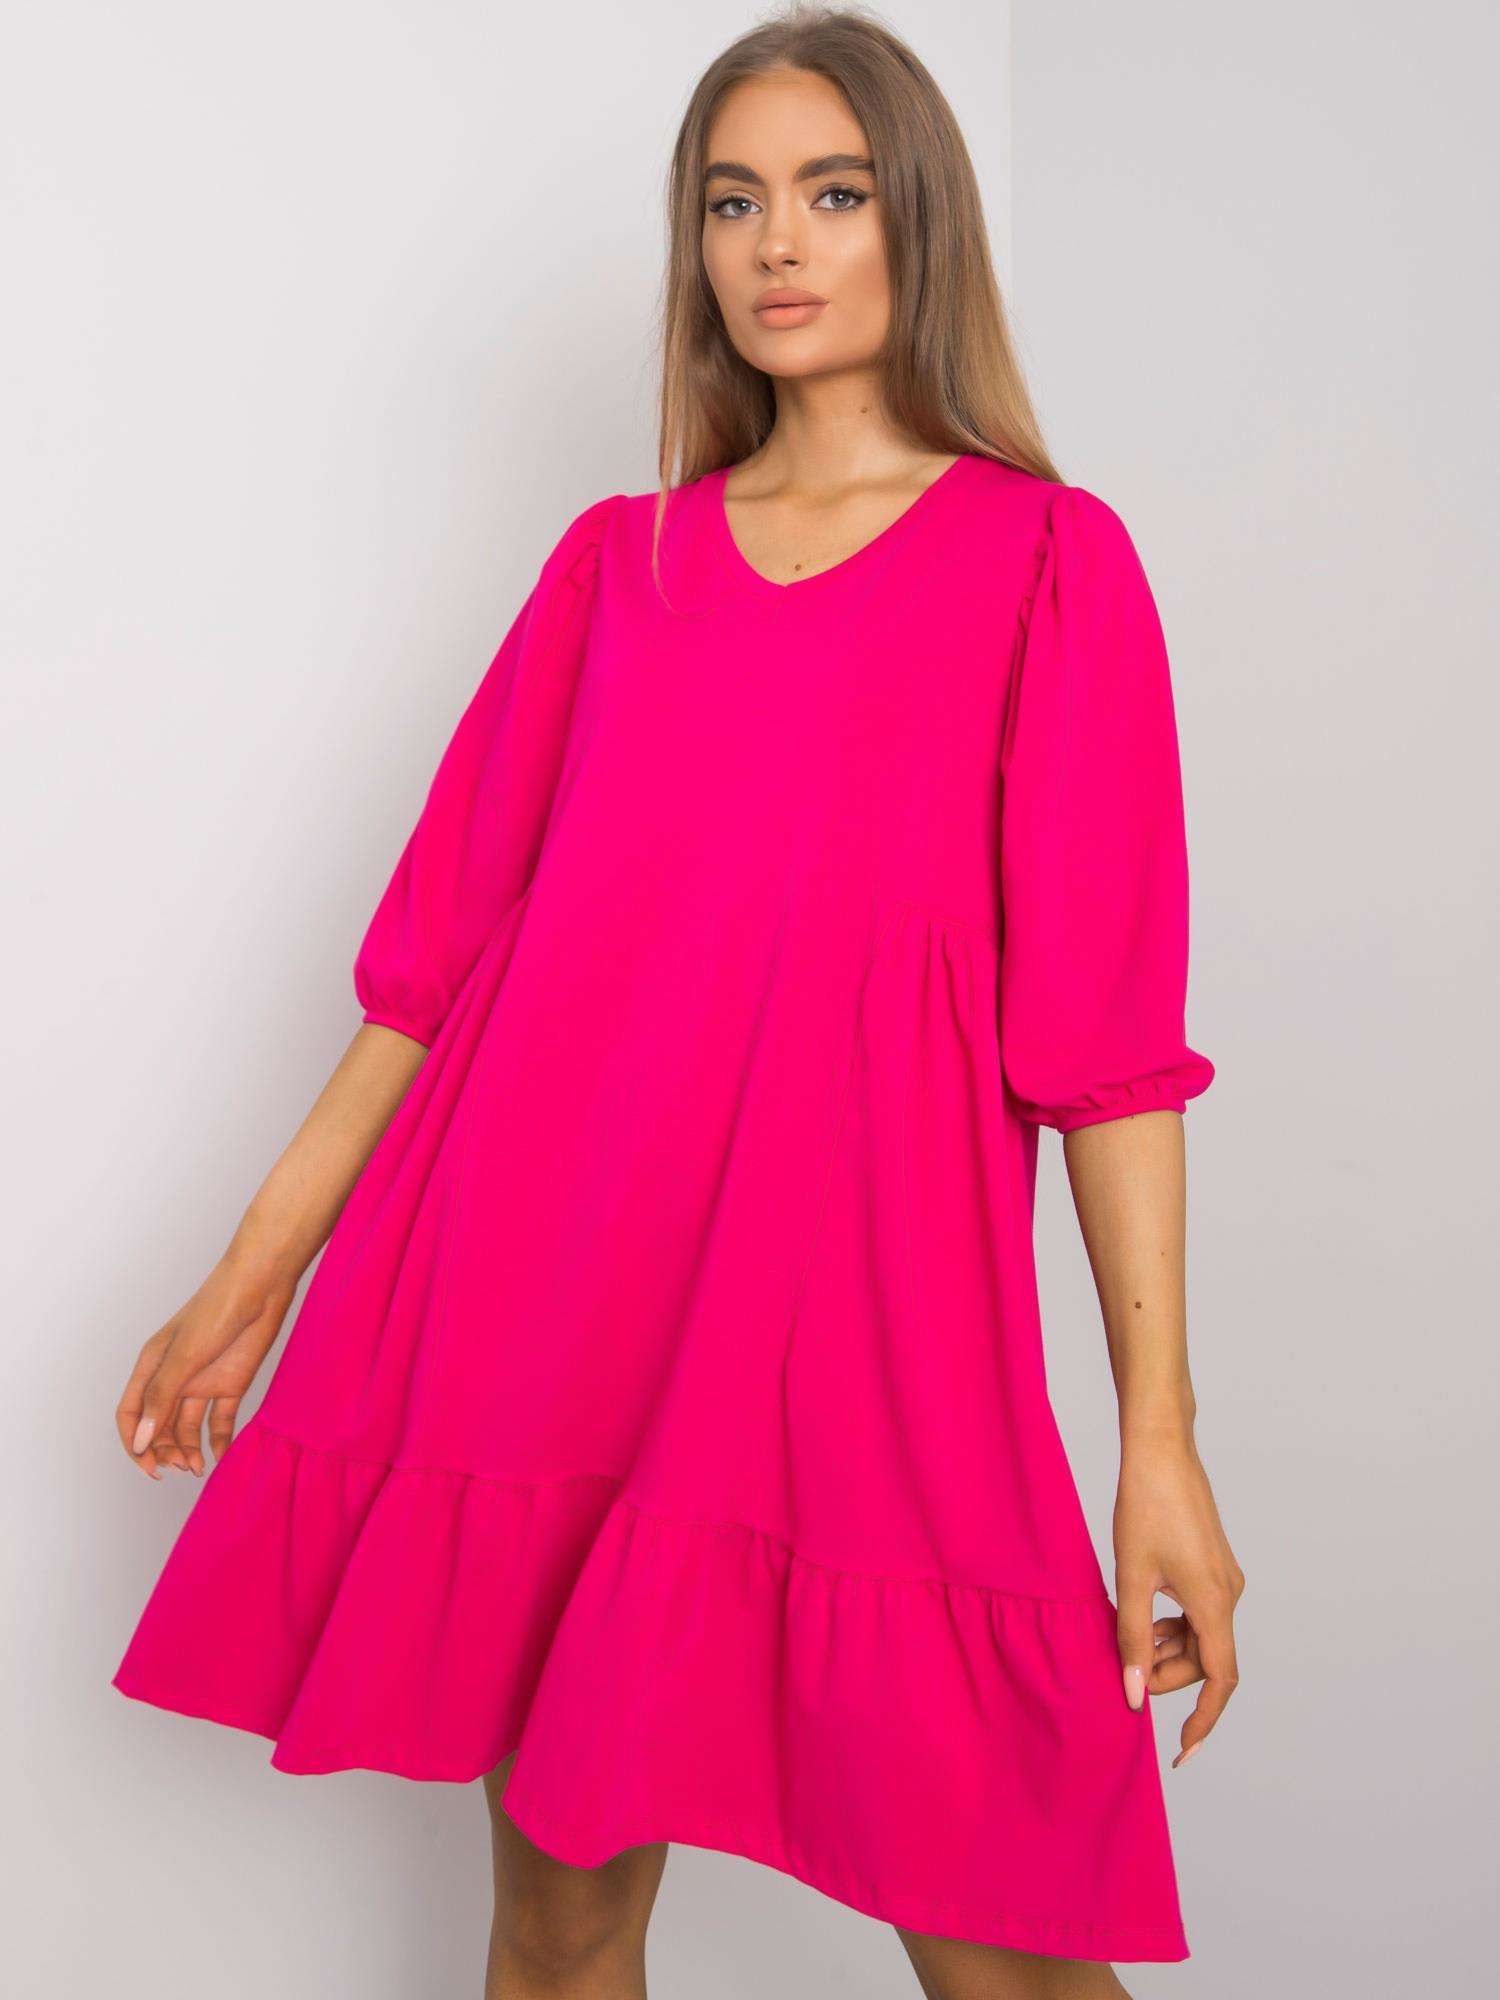 Dámske ružové oversize šaty s volánom - S/M